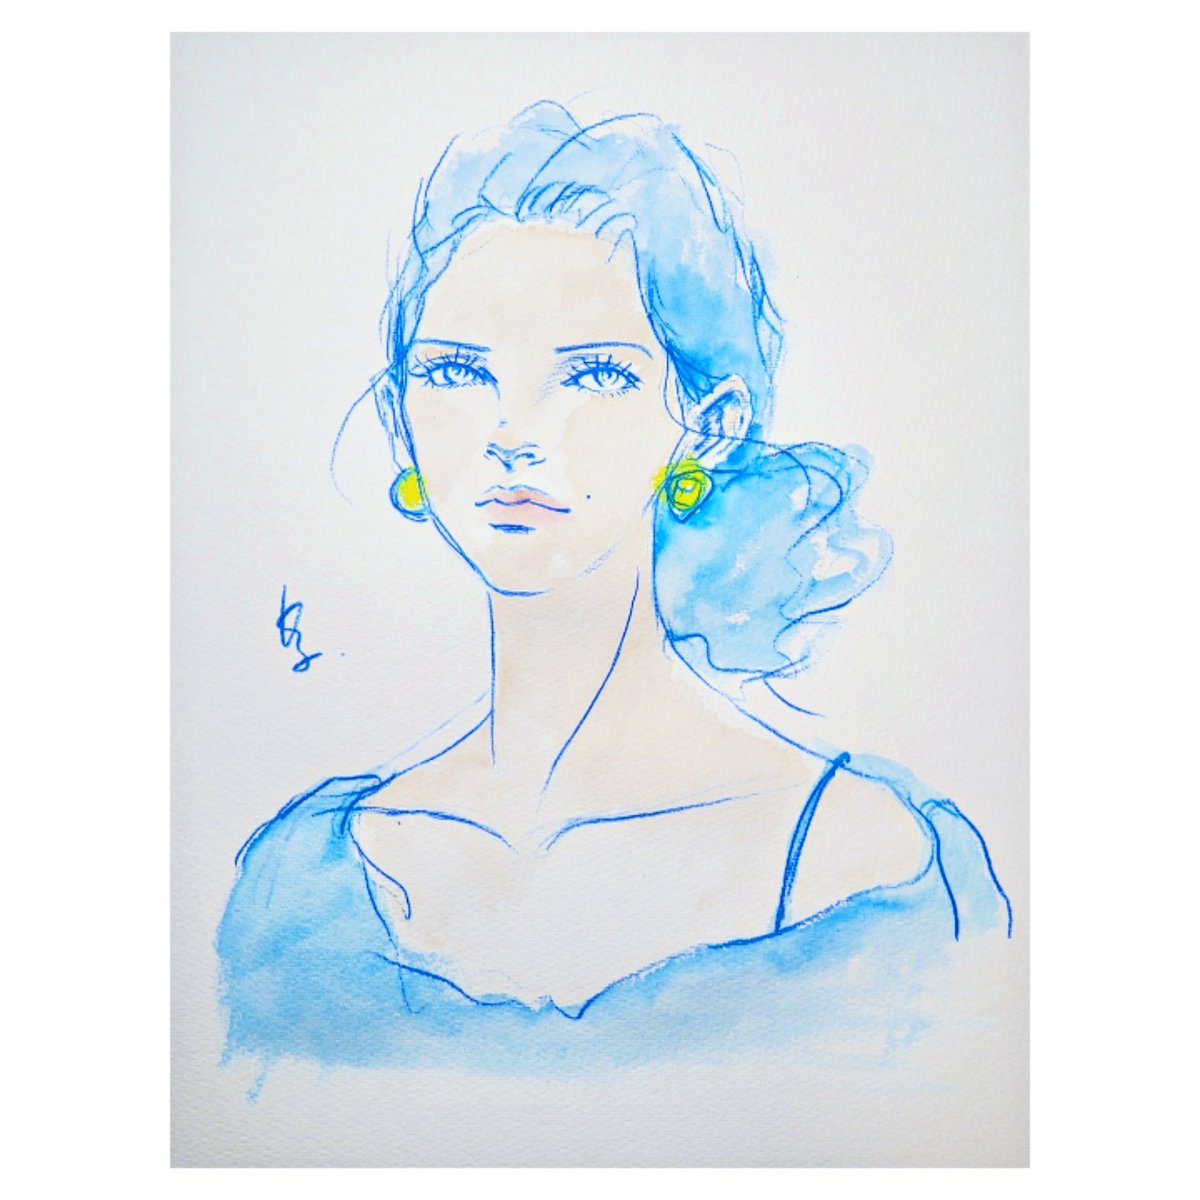 2024.0415
ー 埋まらない質量 ー
#drawing #artwork #illustration #womanportrait #fashionillustration #blue #青 #イラスト #イラストグラム #福岡 #日課 #美人画 #人物画 #絵描きさんと繋がりたい #kazuko_sketch_